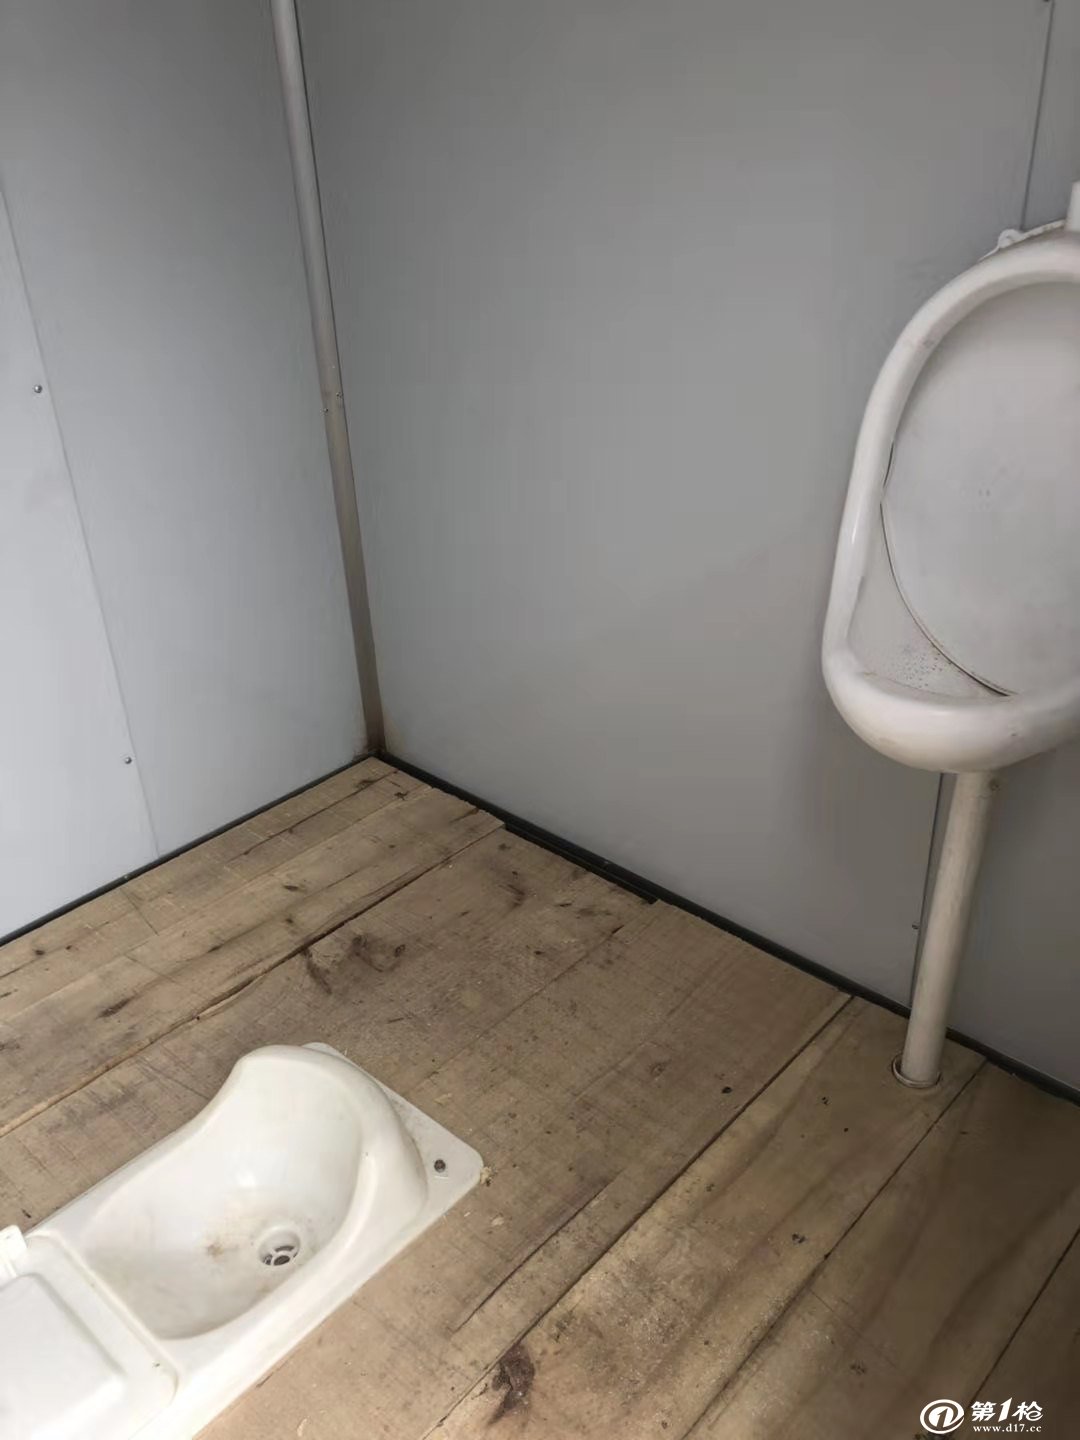 新农村无害化厕所粪尿分集式蹲便器干湿分离免水冲